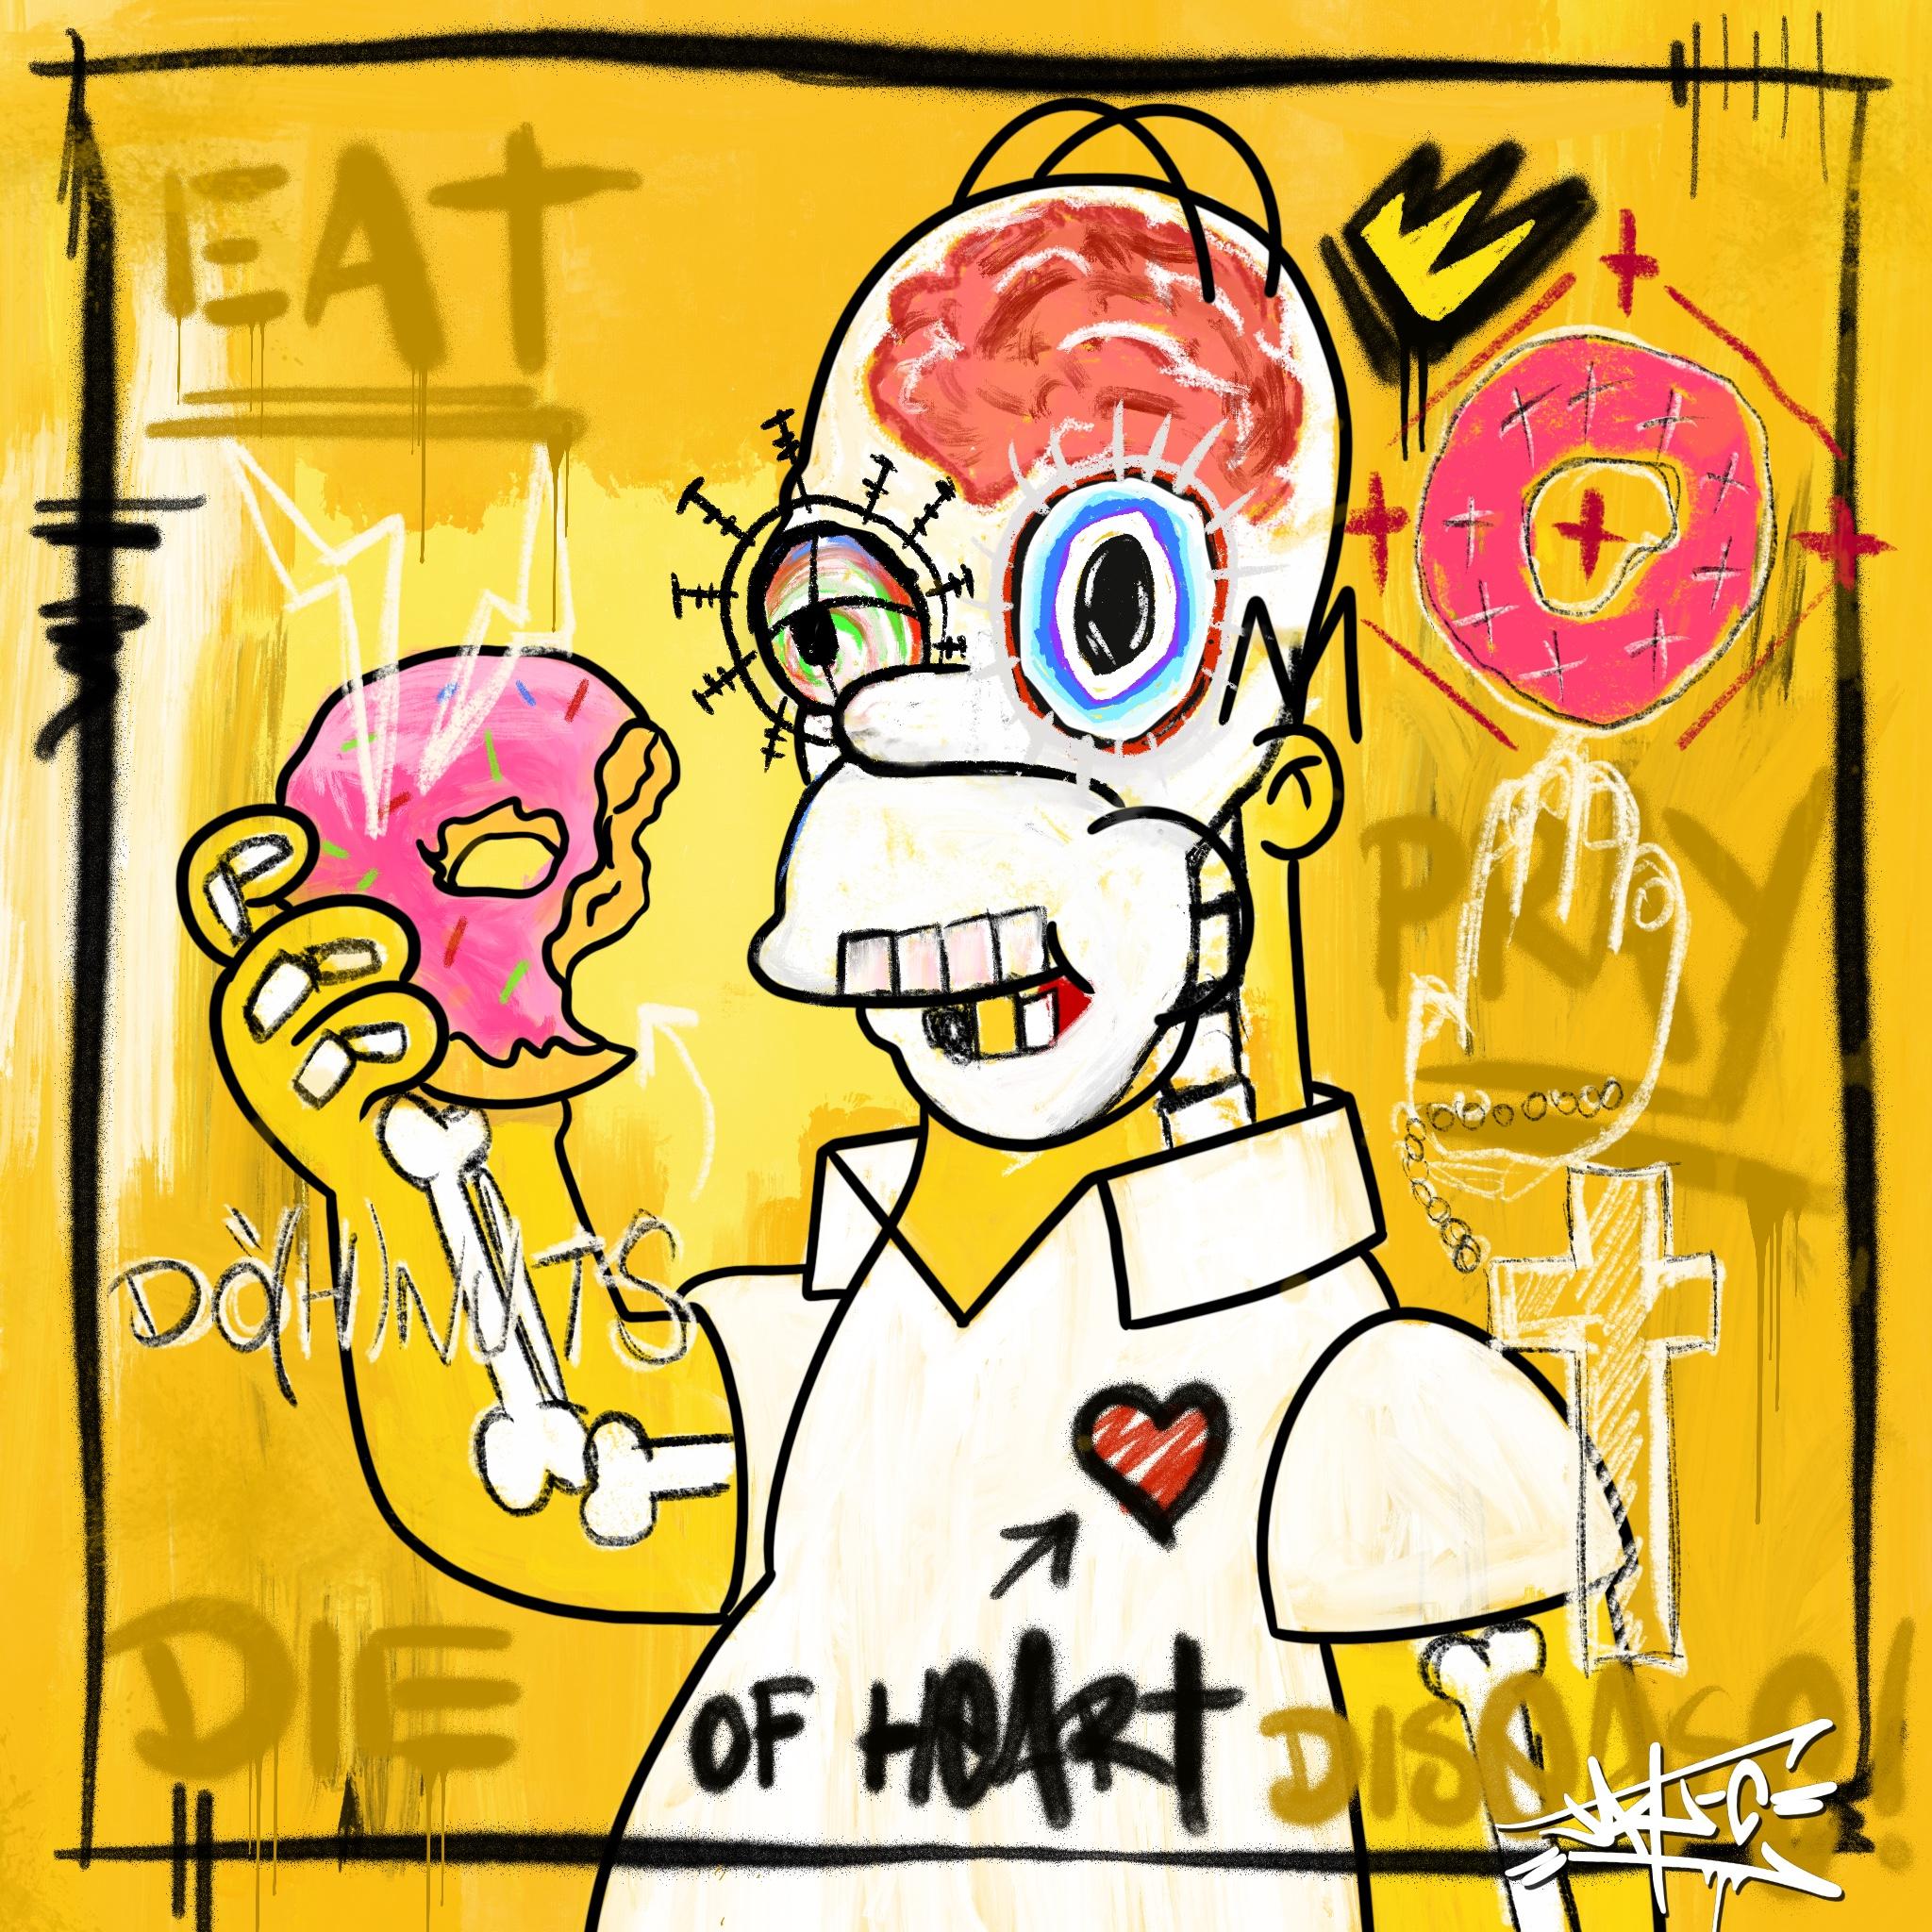 Eat! Pray! Die of Heart Disease!, Painting, Simpsons, Pop Art, Street Art